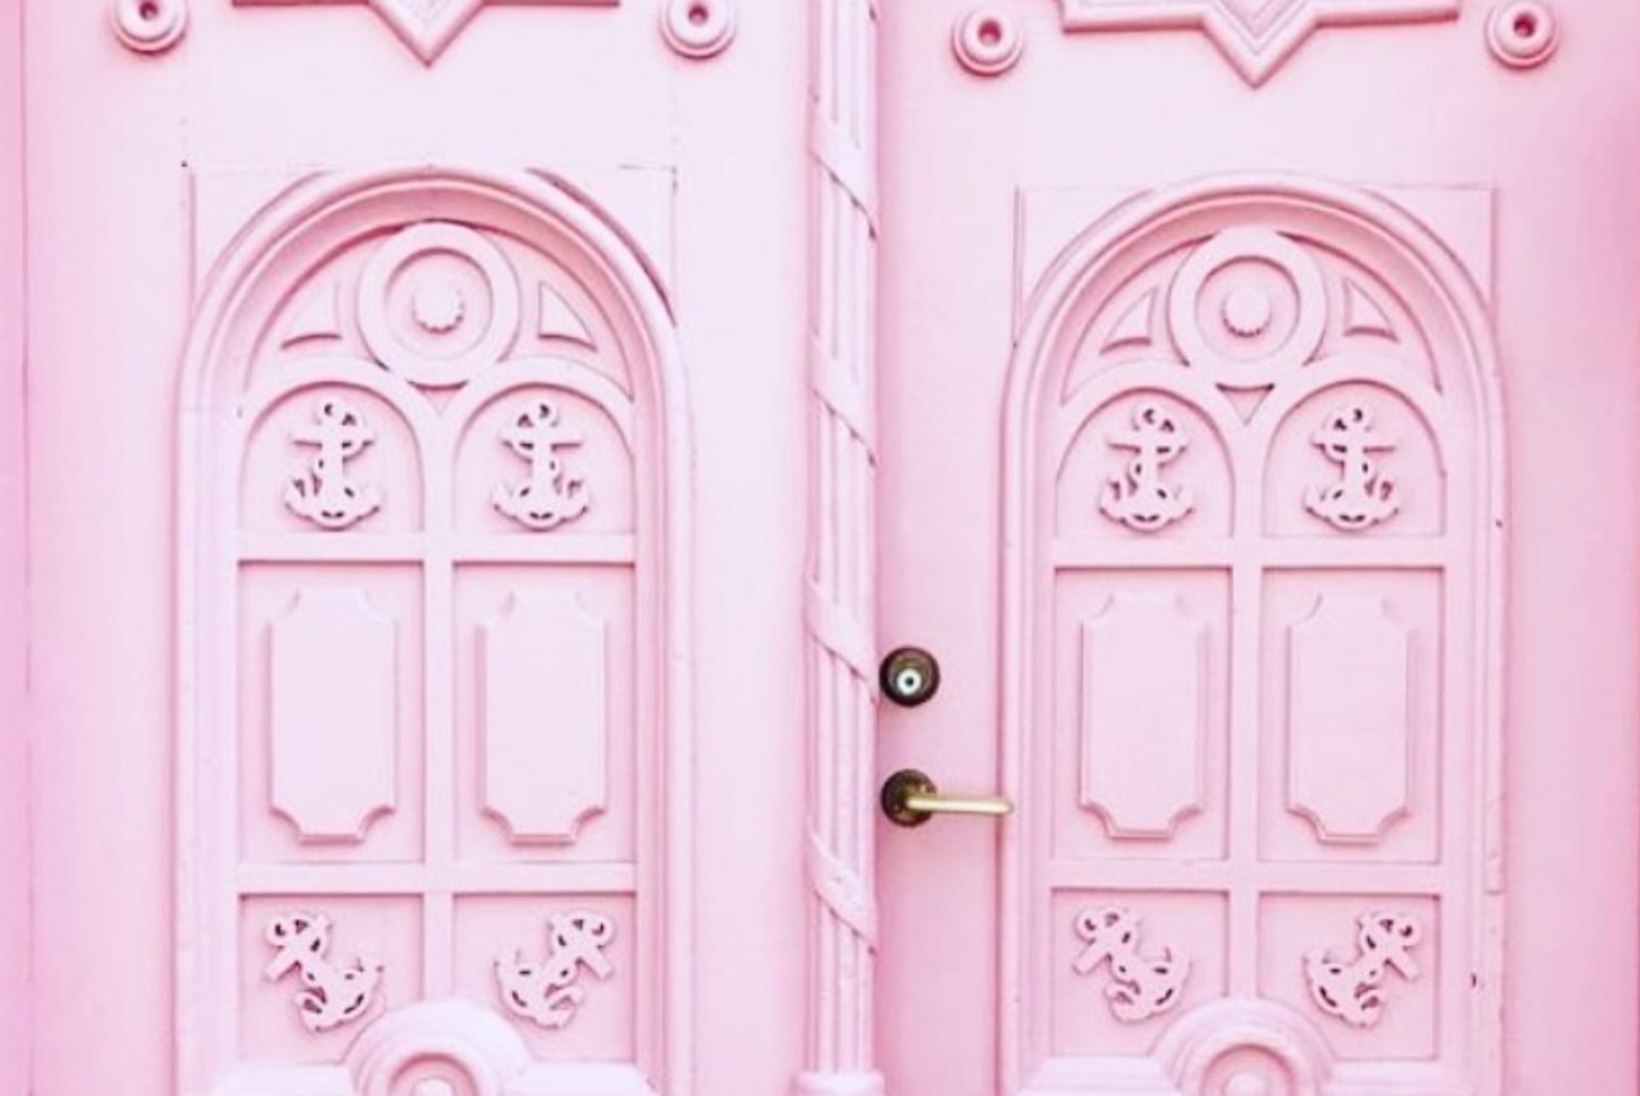 Millele mõelda enne, kui ukse roosaks värvid?